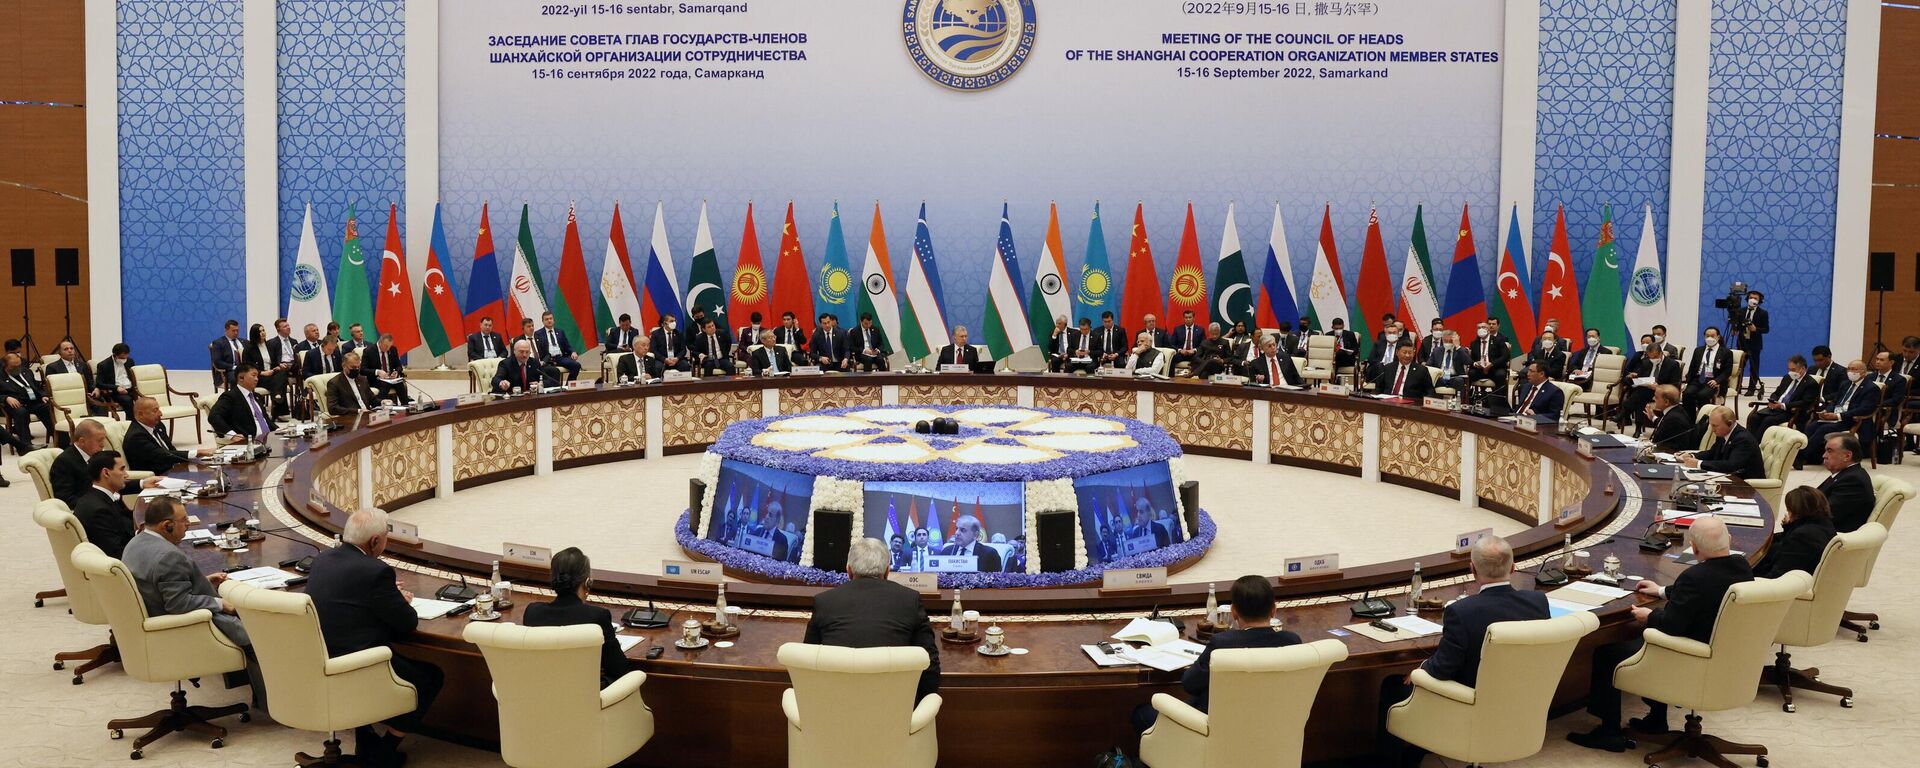 Şanghay İşbirliği Örgütü (ŞİÖ) Devlet Başkanları 22. Toplantısı, Özbekistan’ın tarihi Semerkant şehrinde gerçekleştirildi - Sputnik Türkiye, 1920, 16.09.2022